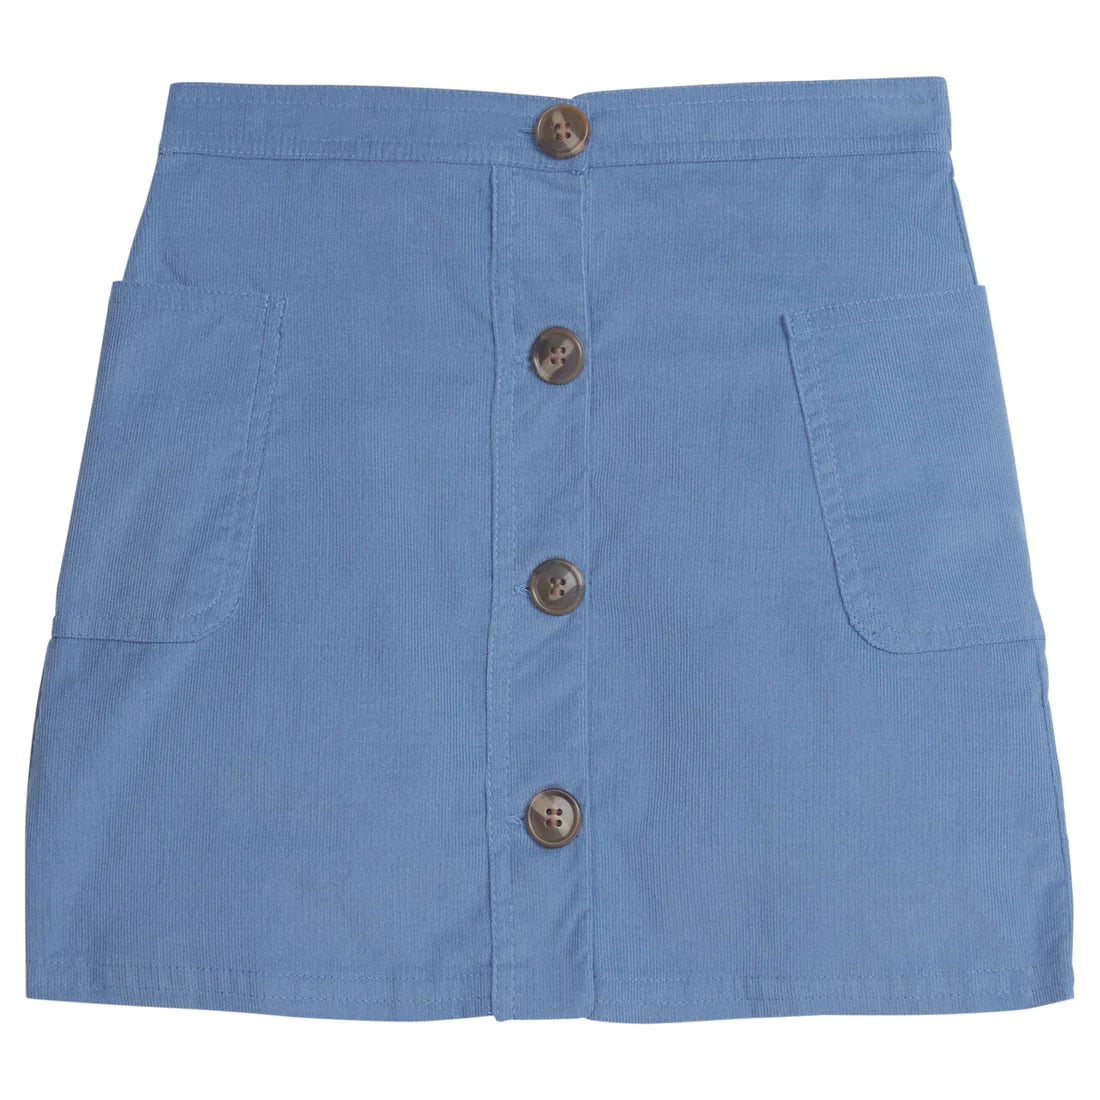 Emily Pocket Skirt - Stormy Blue Corduroy